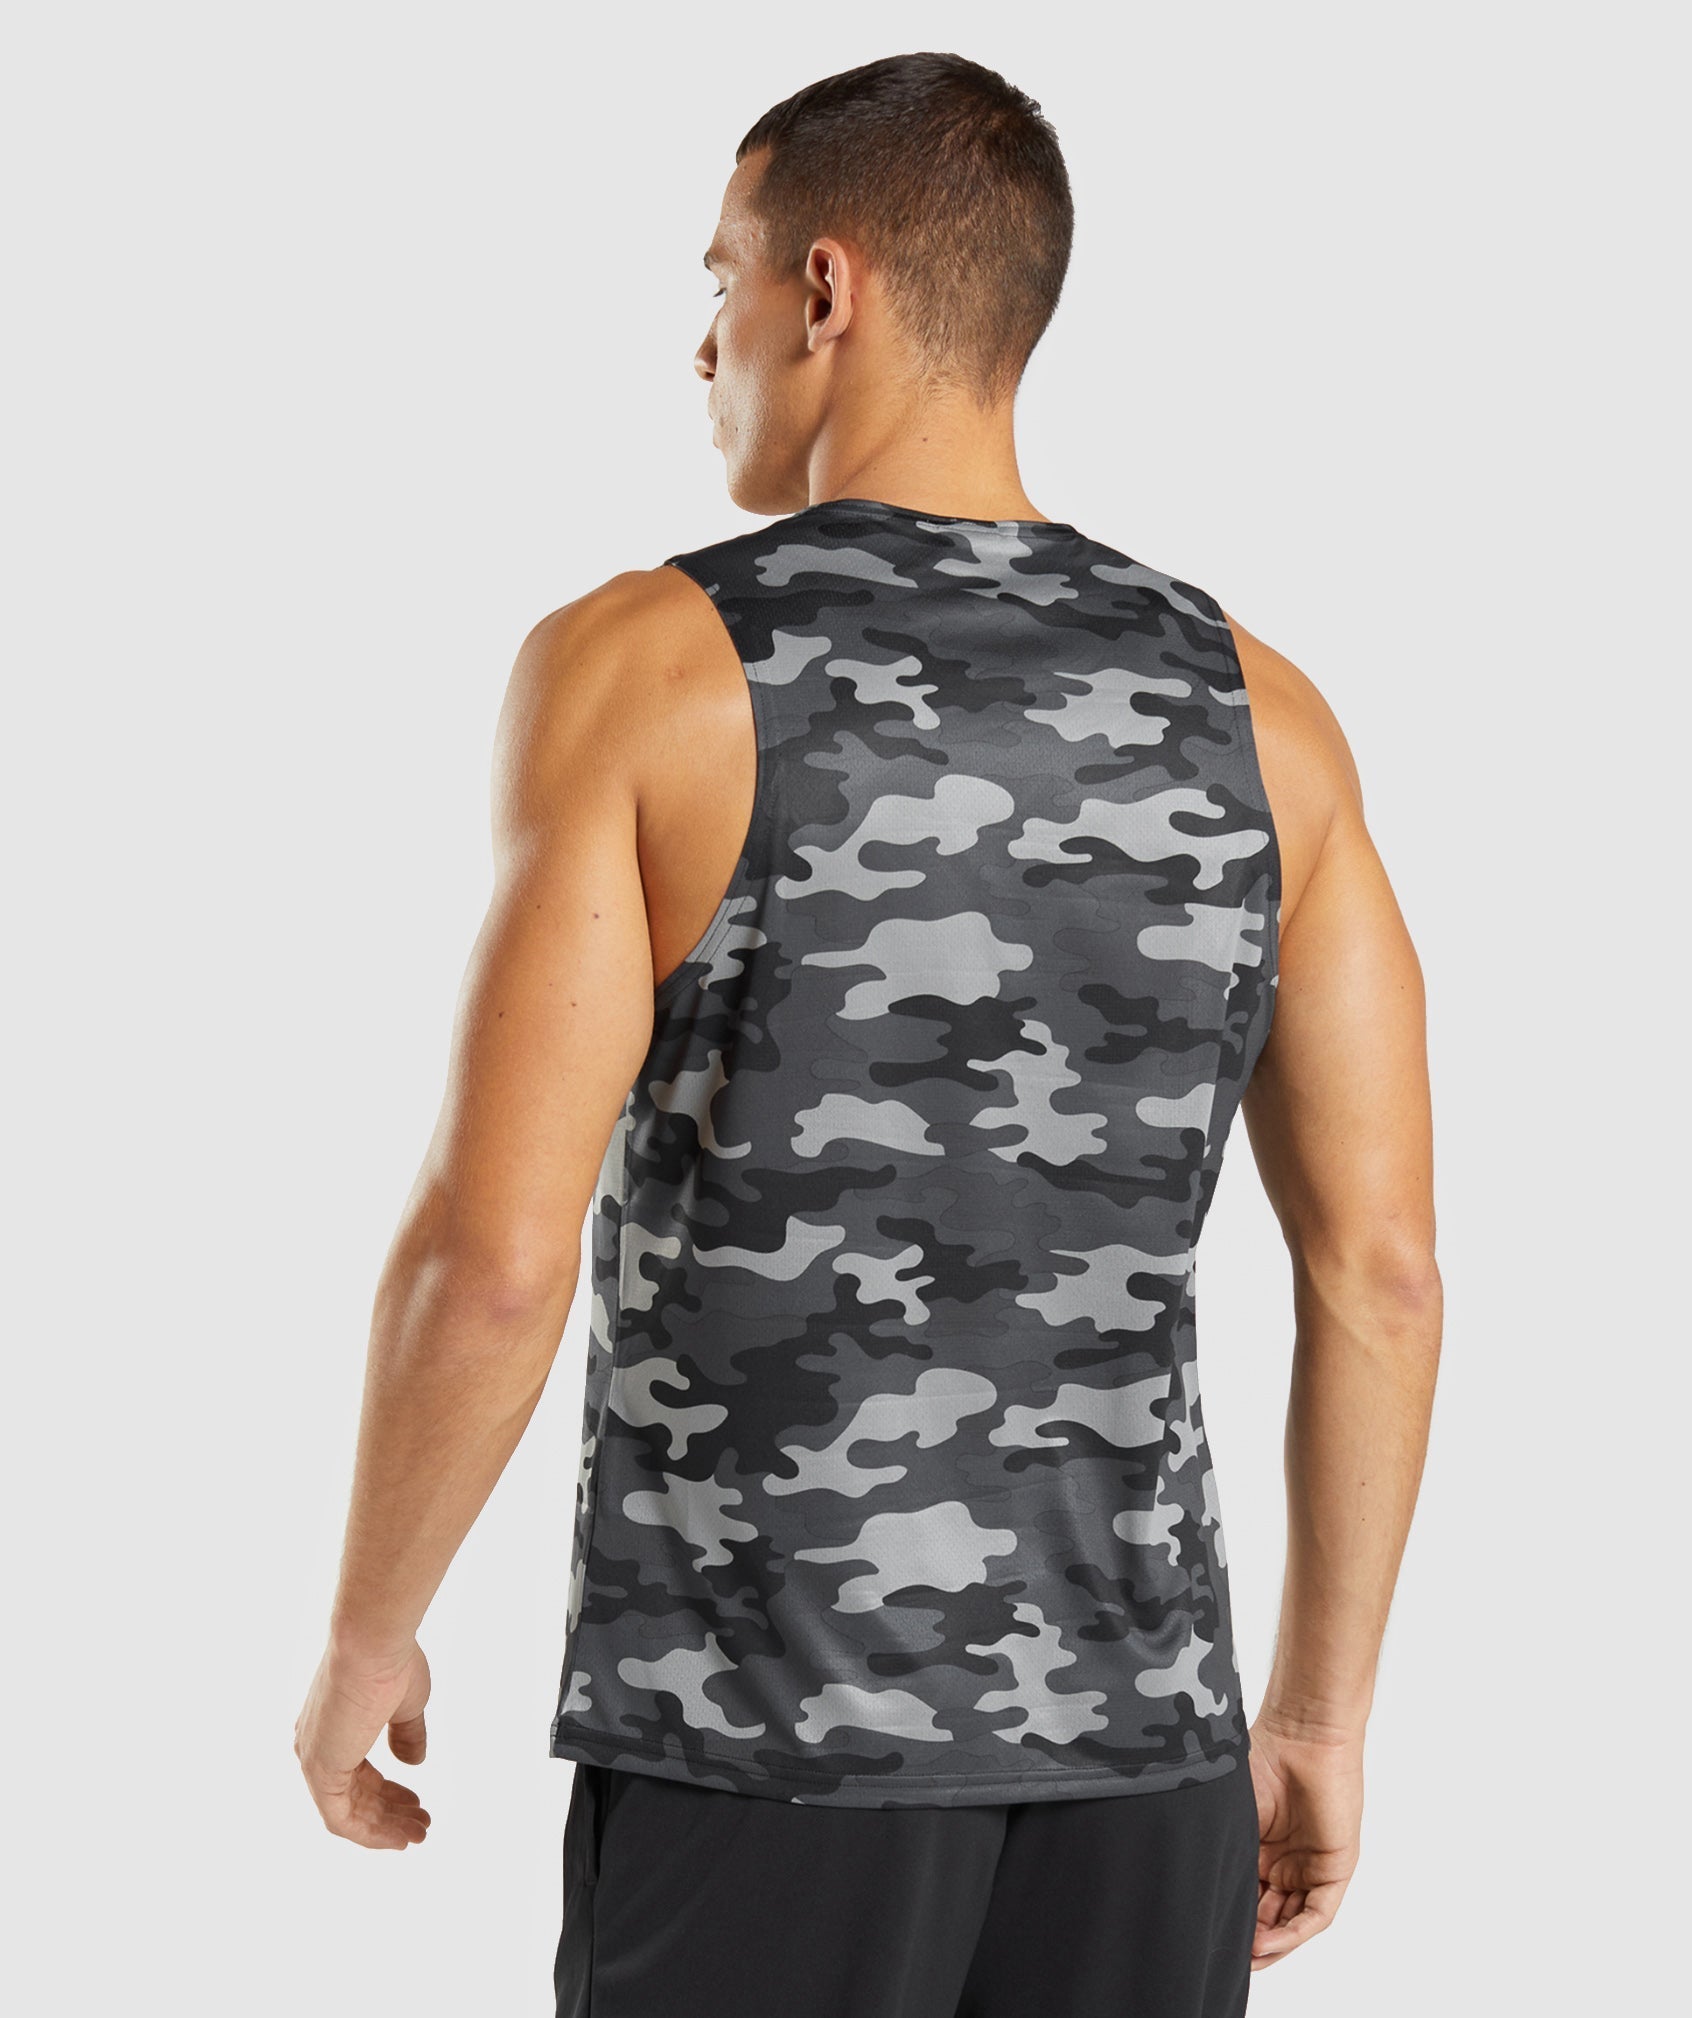 Camisetas de entrenamiento sin mangas para hombres – Camisetas de gimnasio  sin mangas de Gymshark